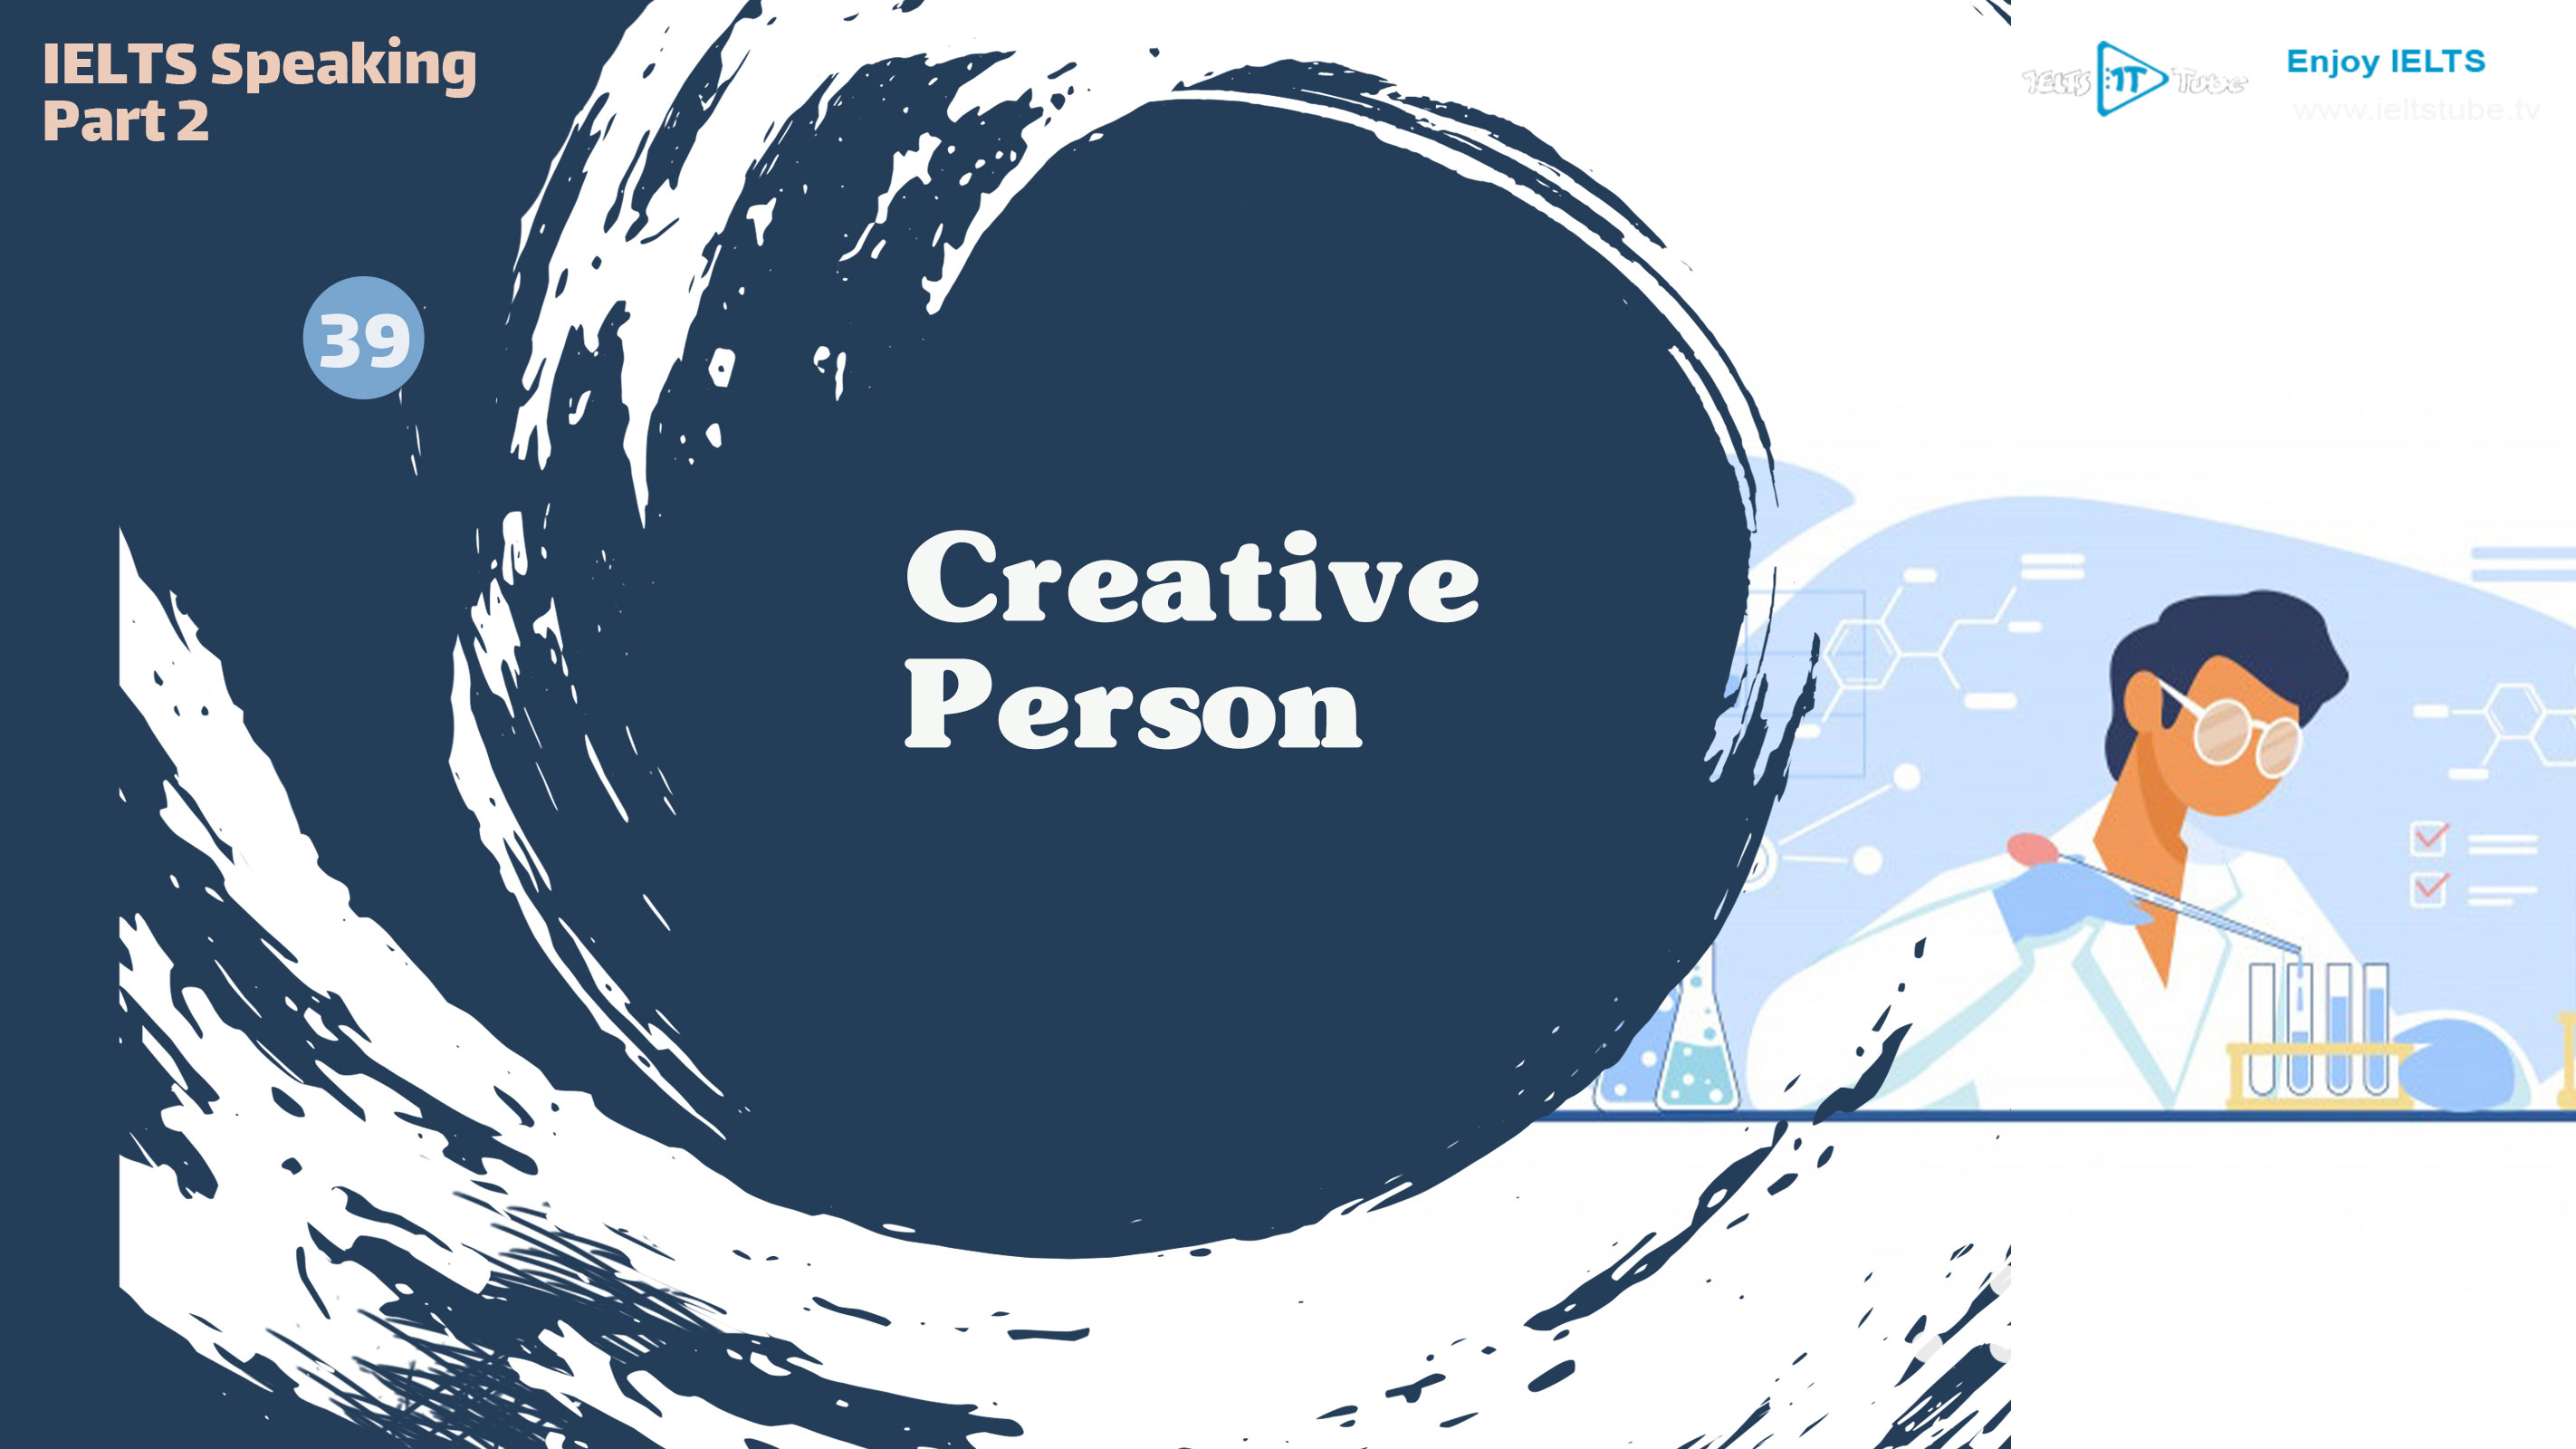 Creative Person (Poster)